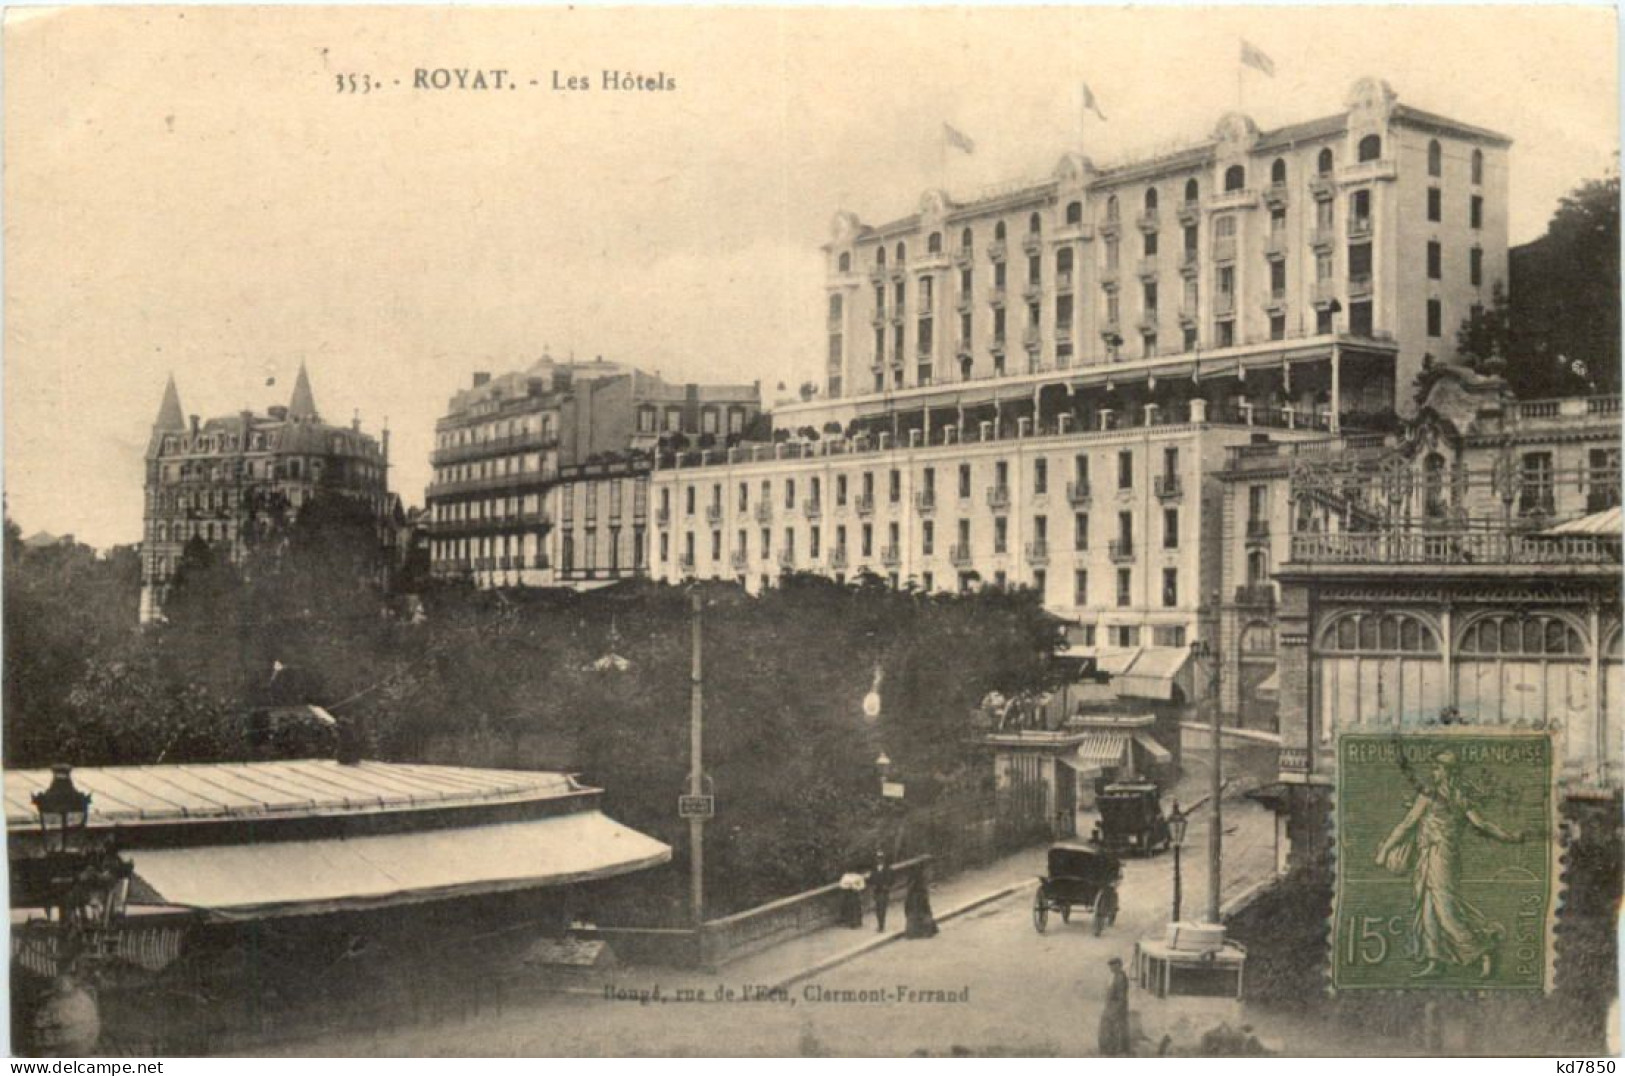 Royat, Les Hotels - Royat